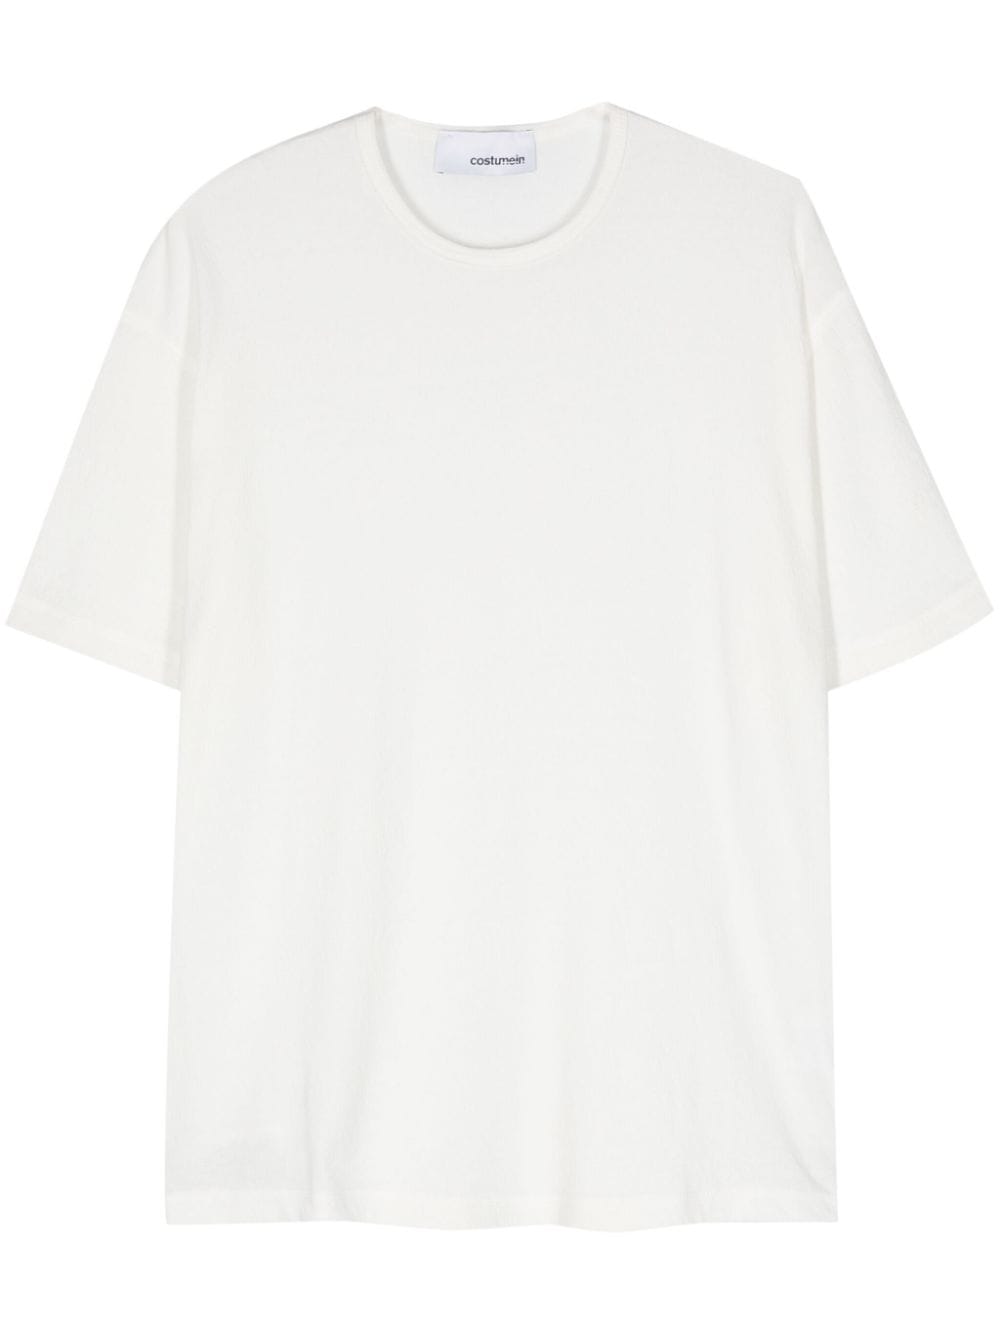 crepe cotton T-shirt